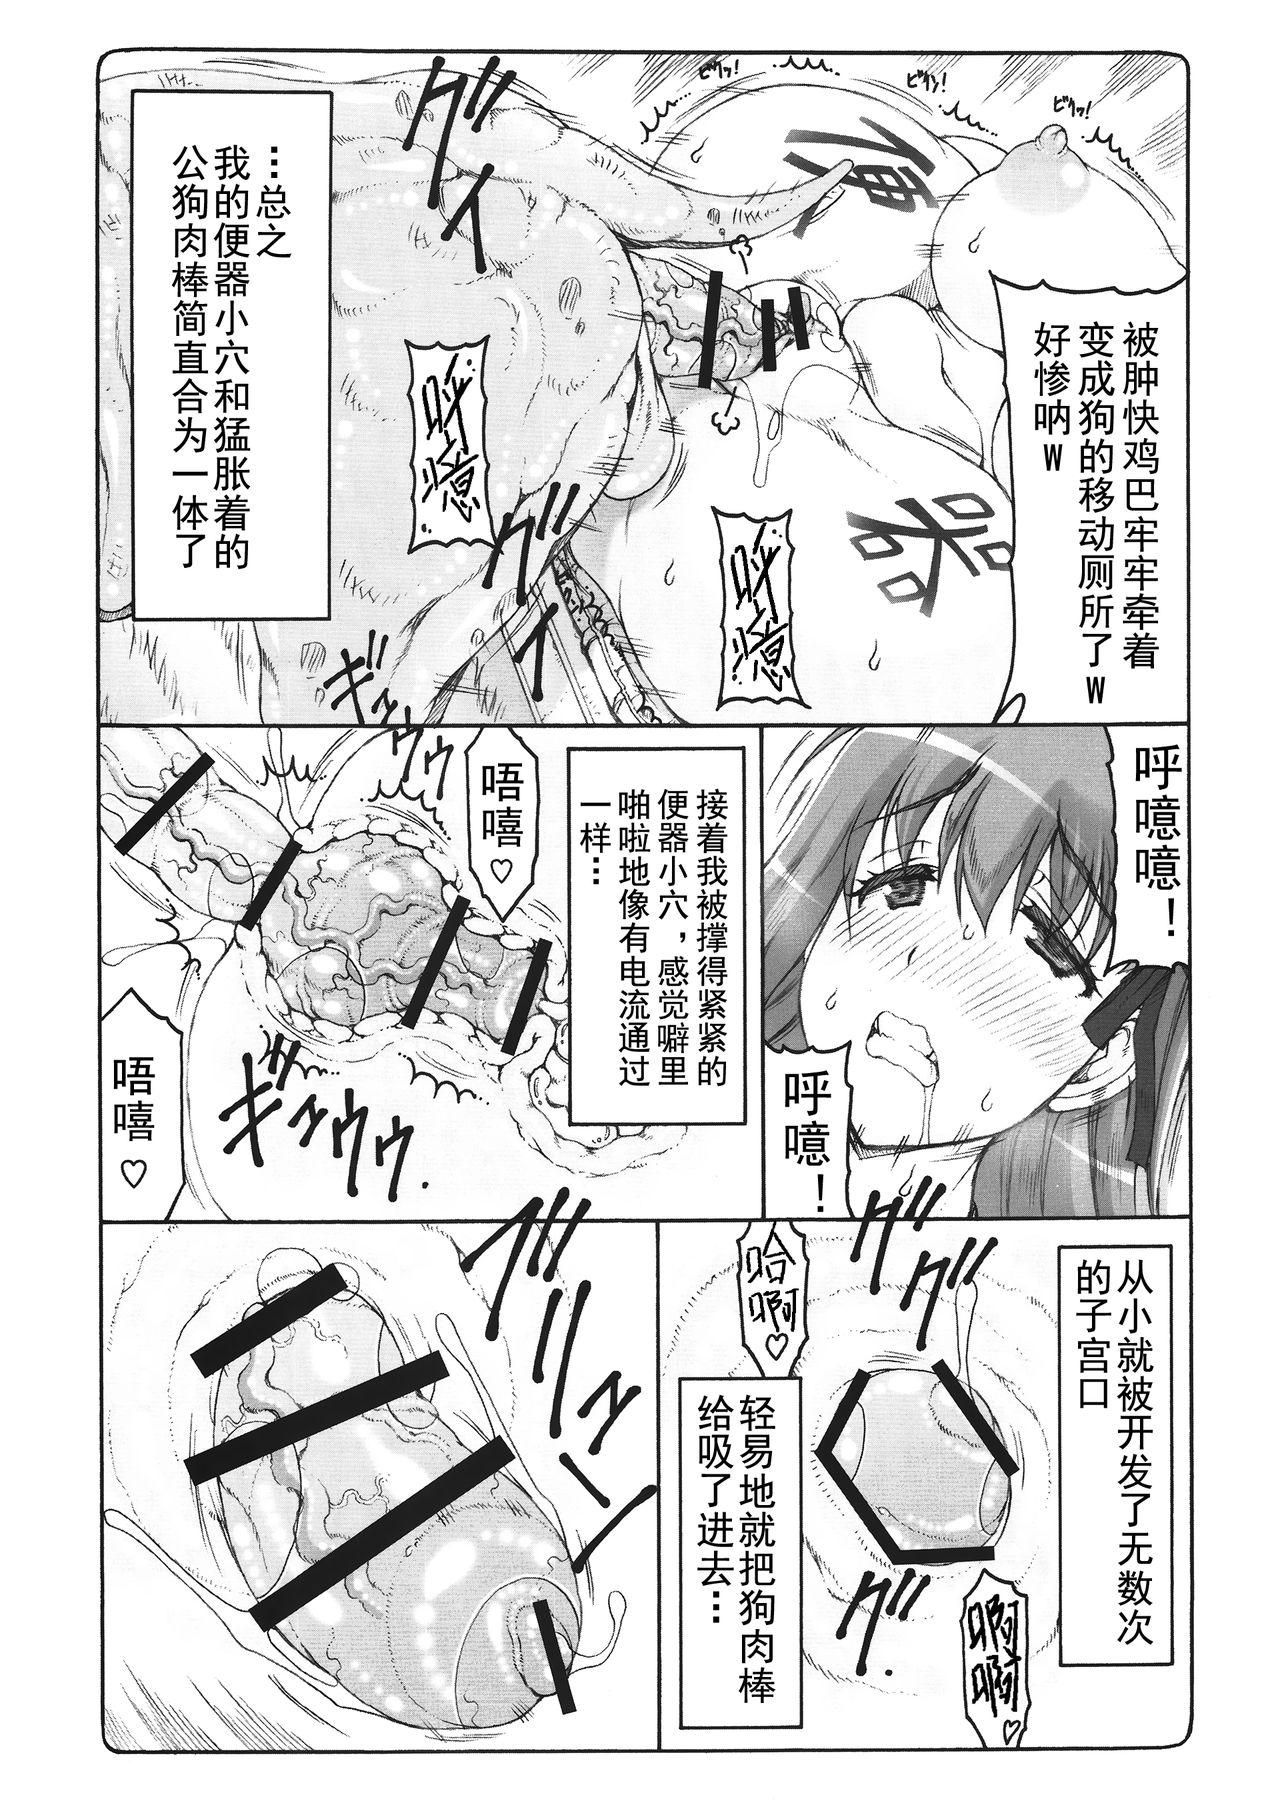 Pussyfucking Kotori 14 - Fate stay night Buttplug - Page 9